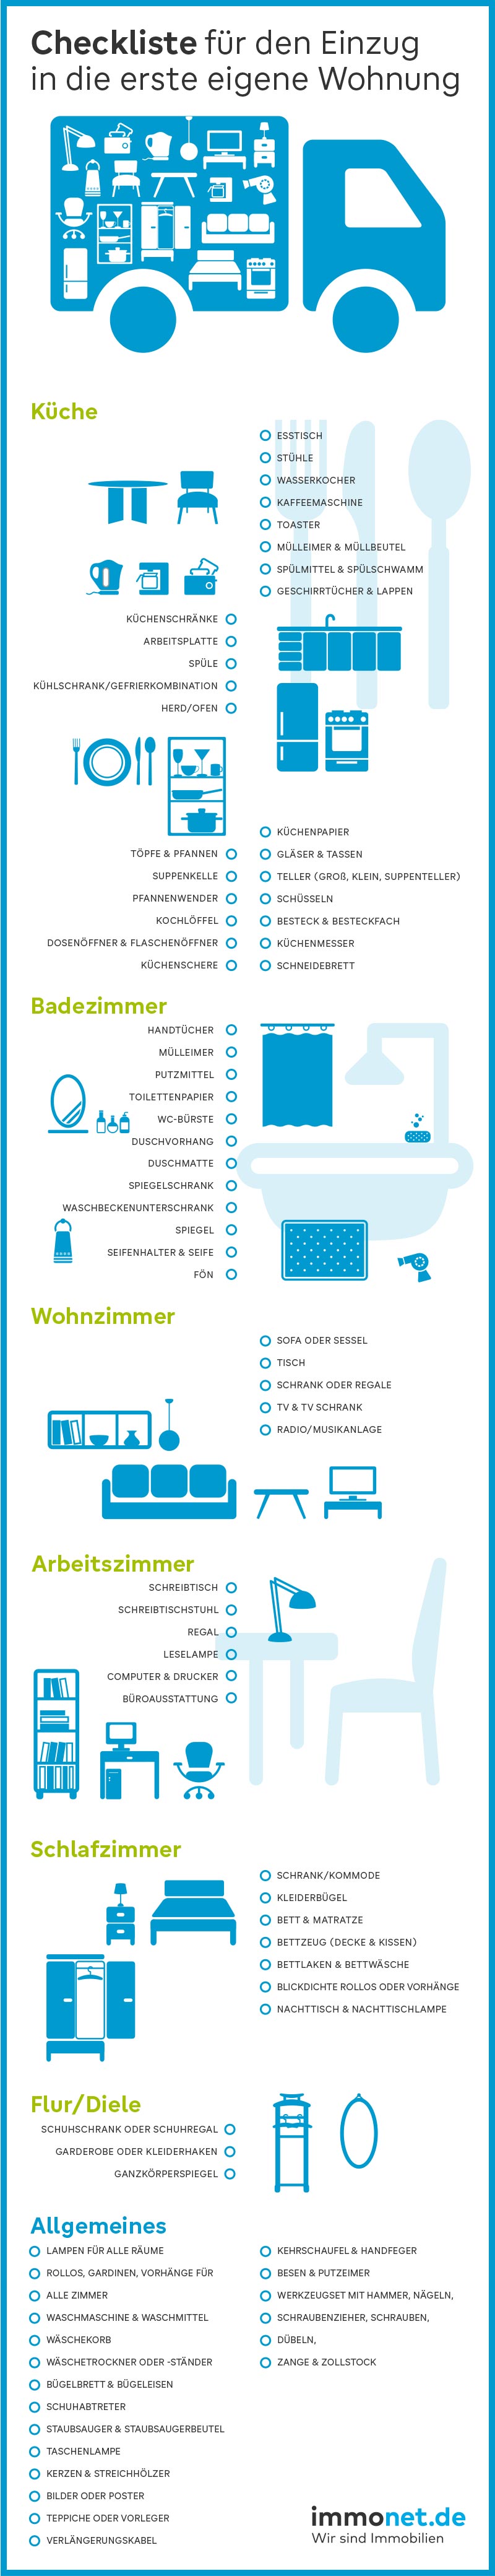 Checkliste "Die erste eigene Wohnung": Infografik von Immonet